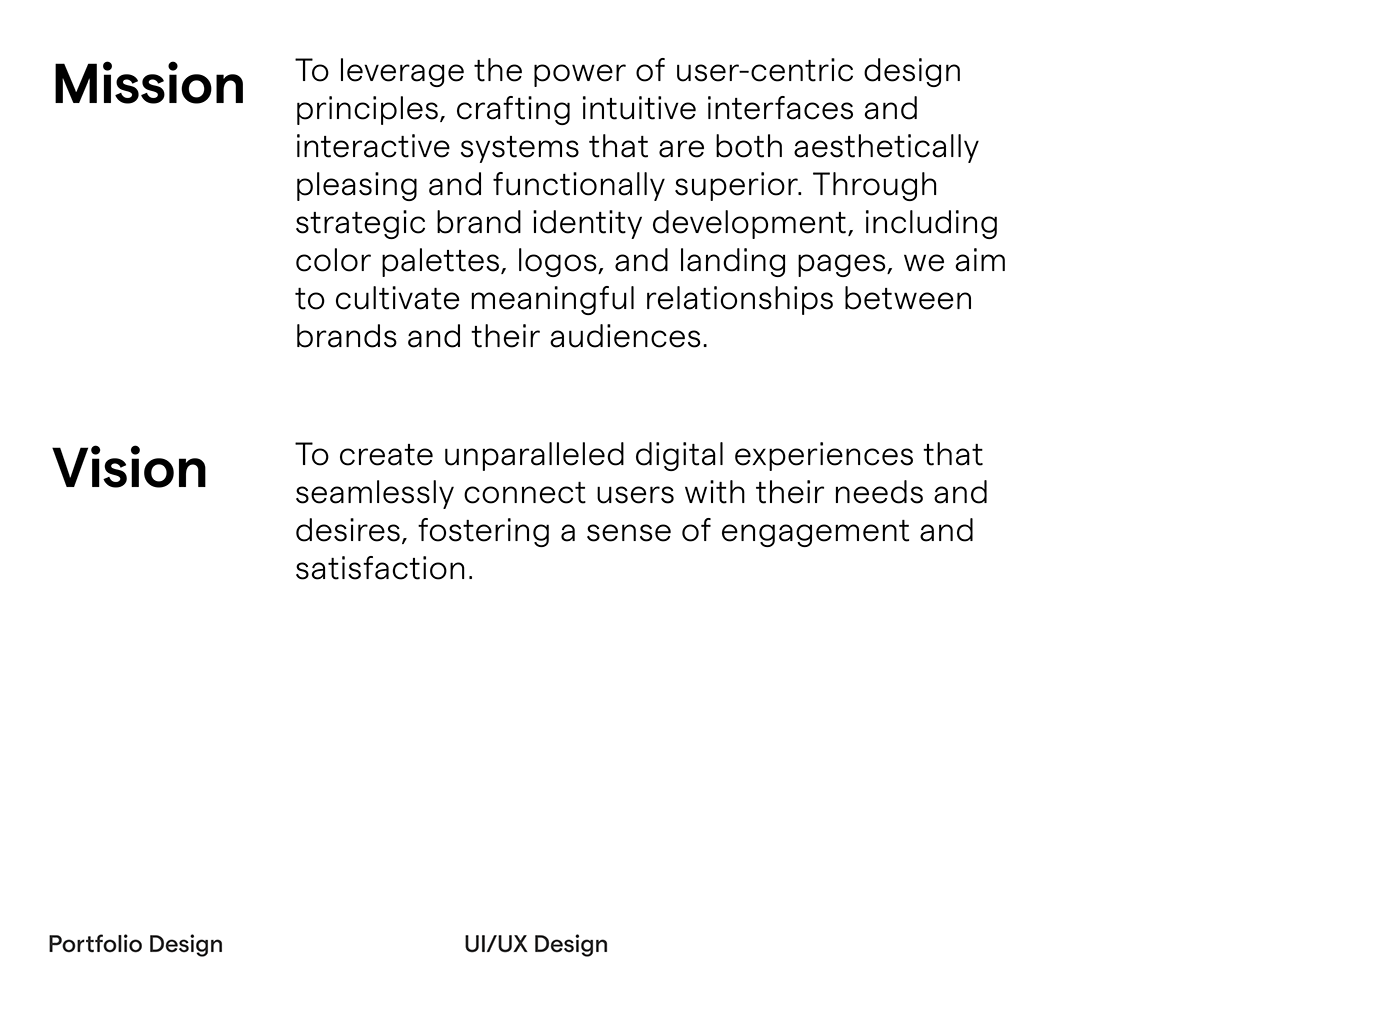 ui ux UX UI UI UX design portfolio ui ux designer brand identity Brand Design brand guidelines visual identity Graphic Designer